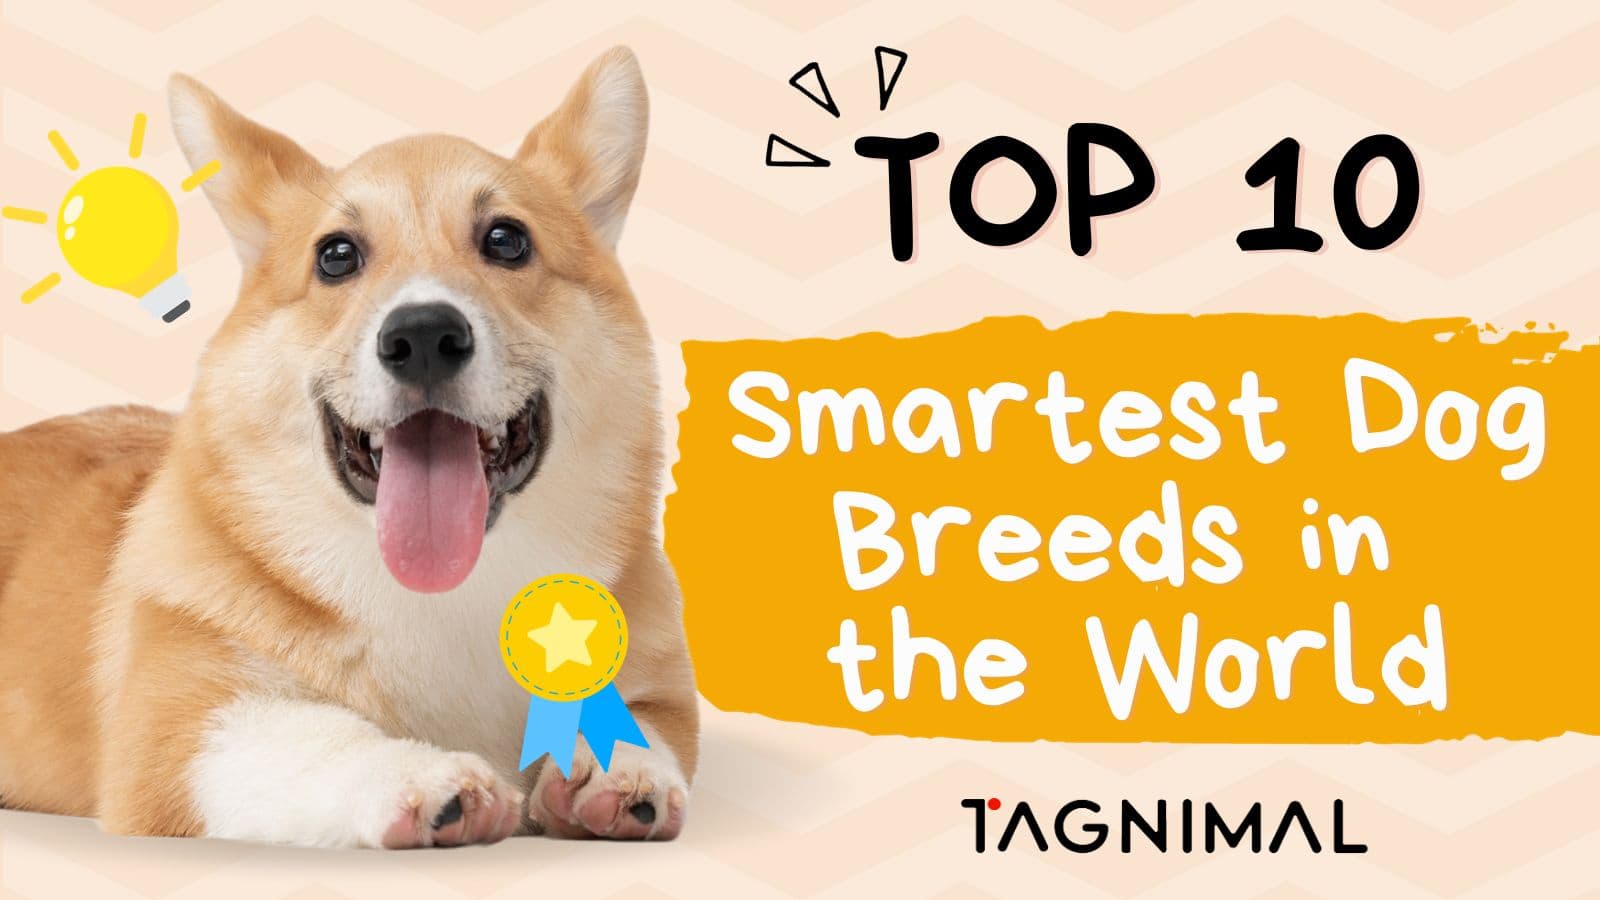 Tagnimal top 10 smartest dog in the world blog poster